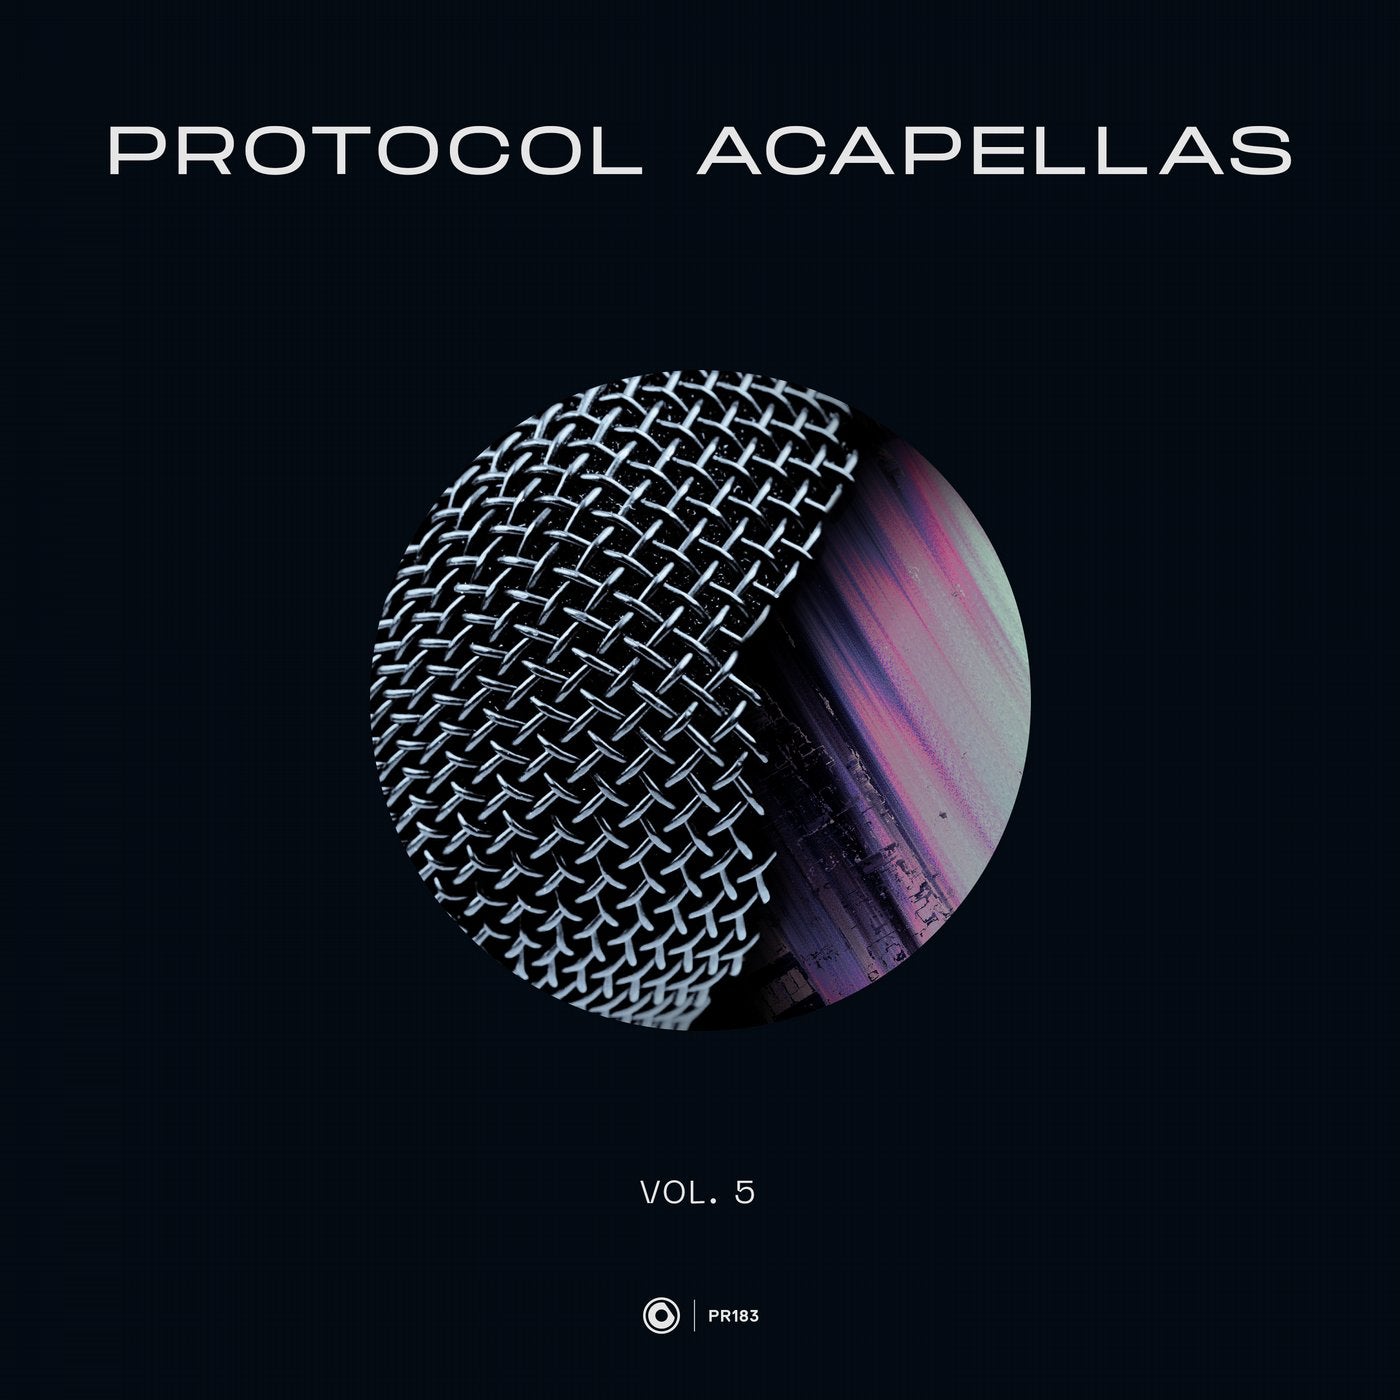 Protocol Acapellas Vol. 5